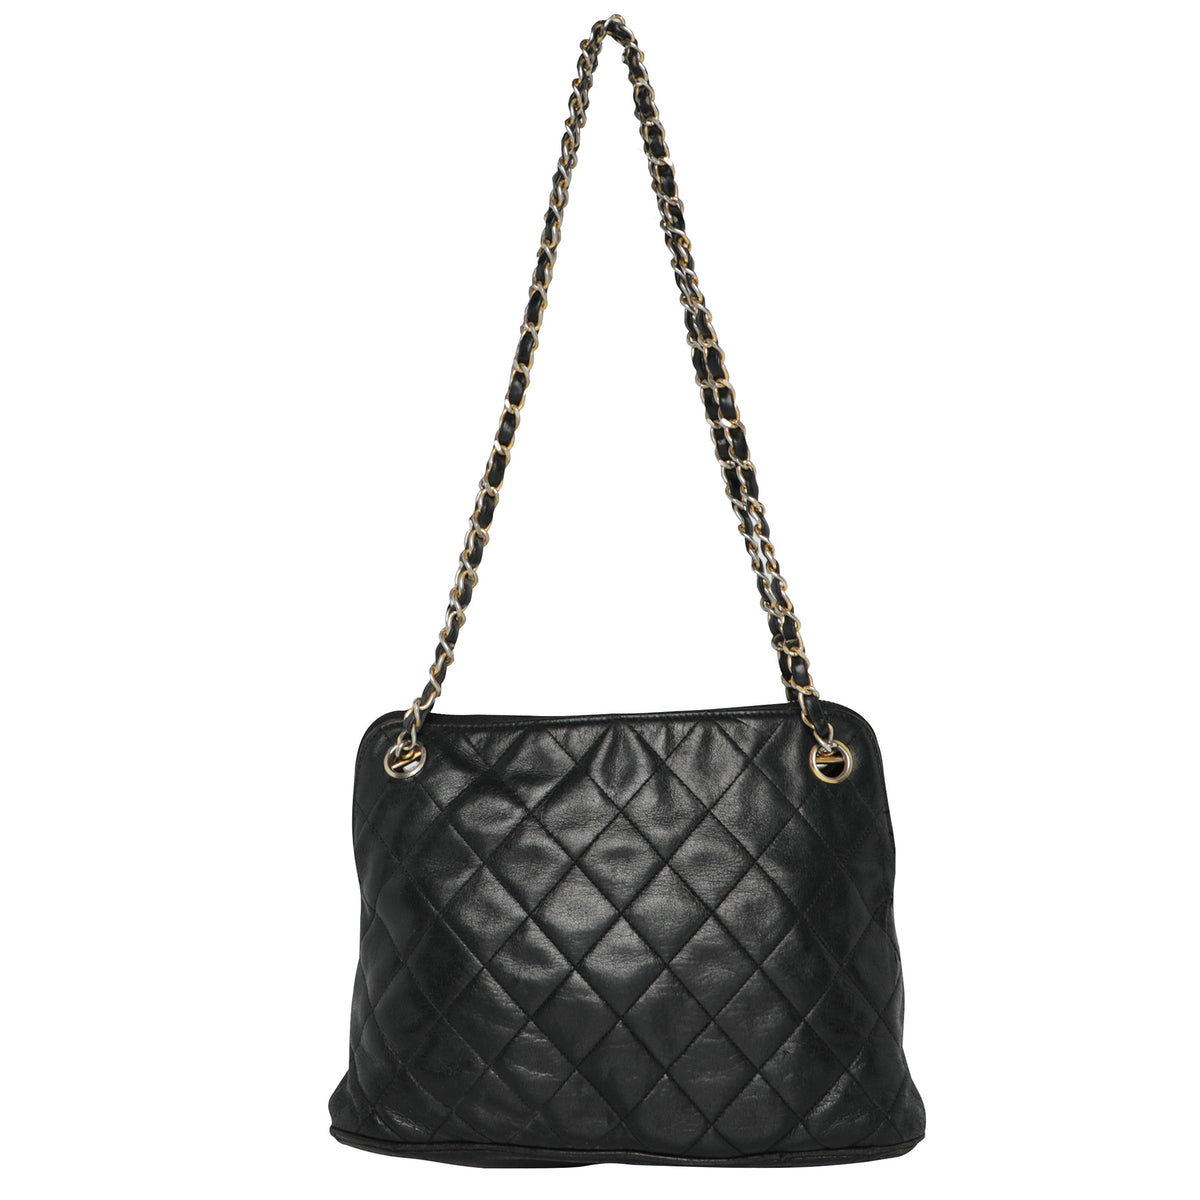 Vintage 80s Chanel Lambskin Leather Quilted Black Shoulder Hobo Bag